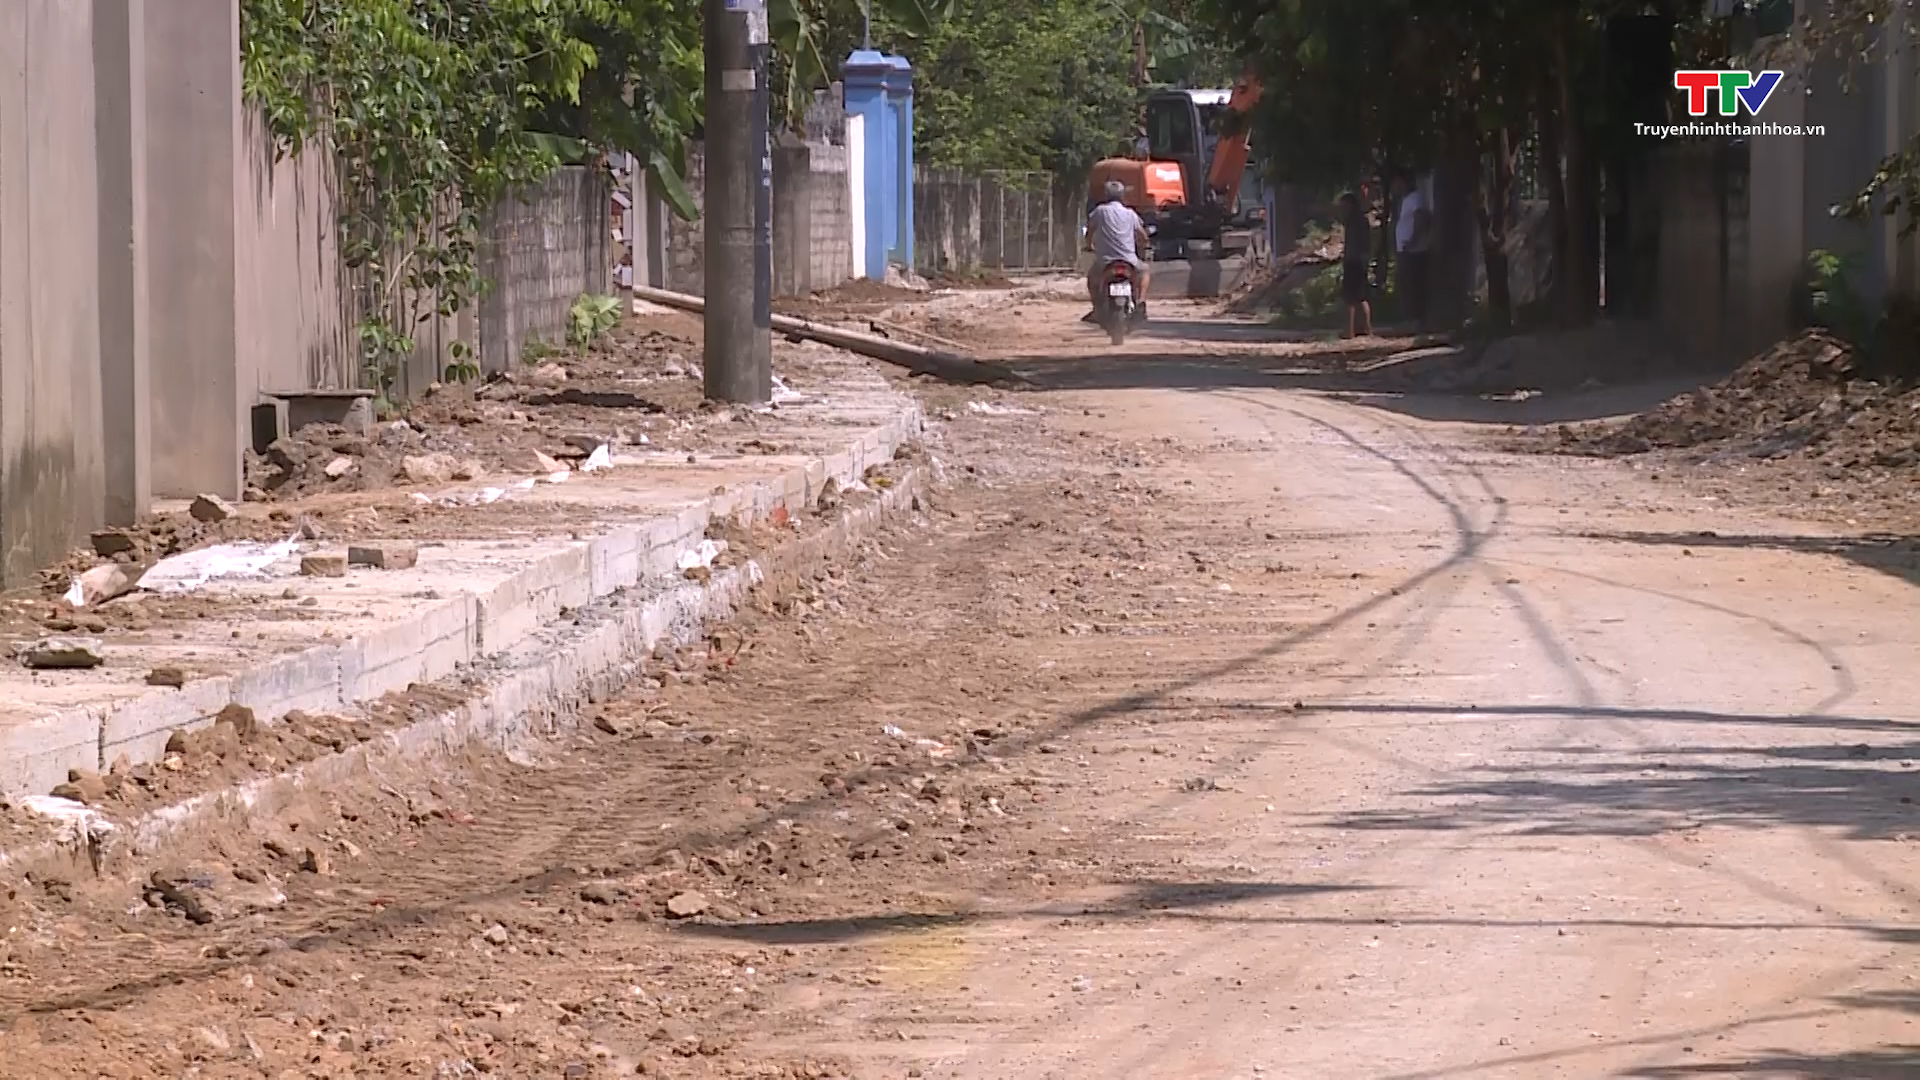 Nhân dân huyện Hà Trung tích cực hiến đất xây dựng đường giao thông - Ảnh 7.